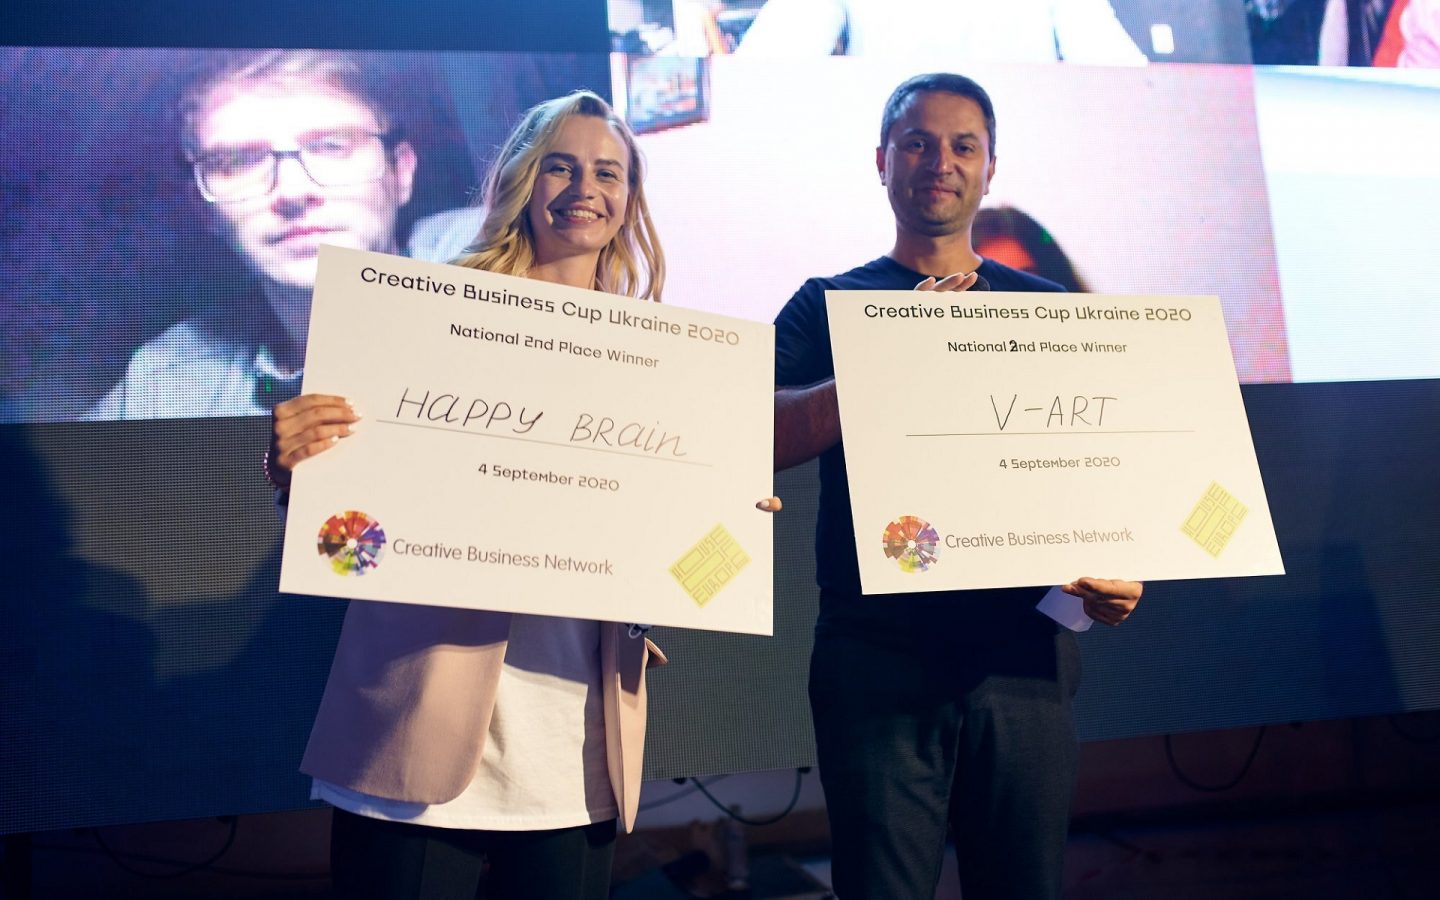 Визначено креативні стартапи, що представлять Україну на міжнародному фестивалі креативності Creative Business Cup BRIGHT у Копенгагені